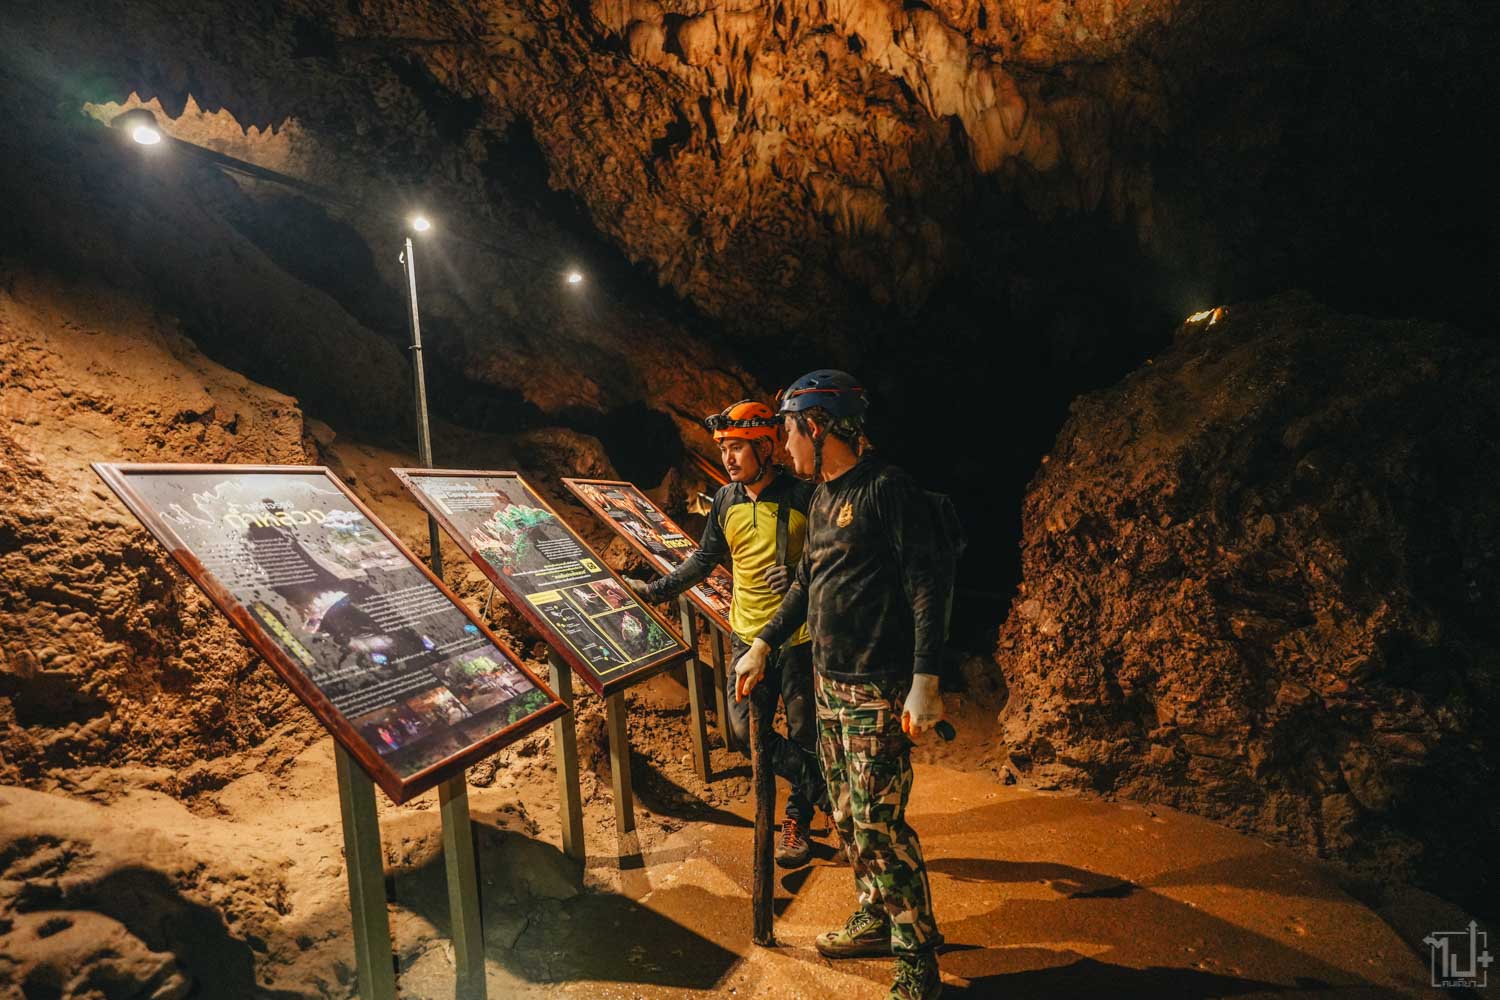 อุทยานแห่งชาติถ้ำหลวงขุนน้ำนางนอน,เที่ยวอุทยานแห่งชาติ,ตามรอย13หมูป่า,ถ้ำหลวง,ที่เที่ยวเชียงราย,เชียงราย,Chiangrai